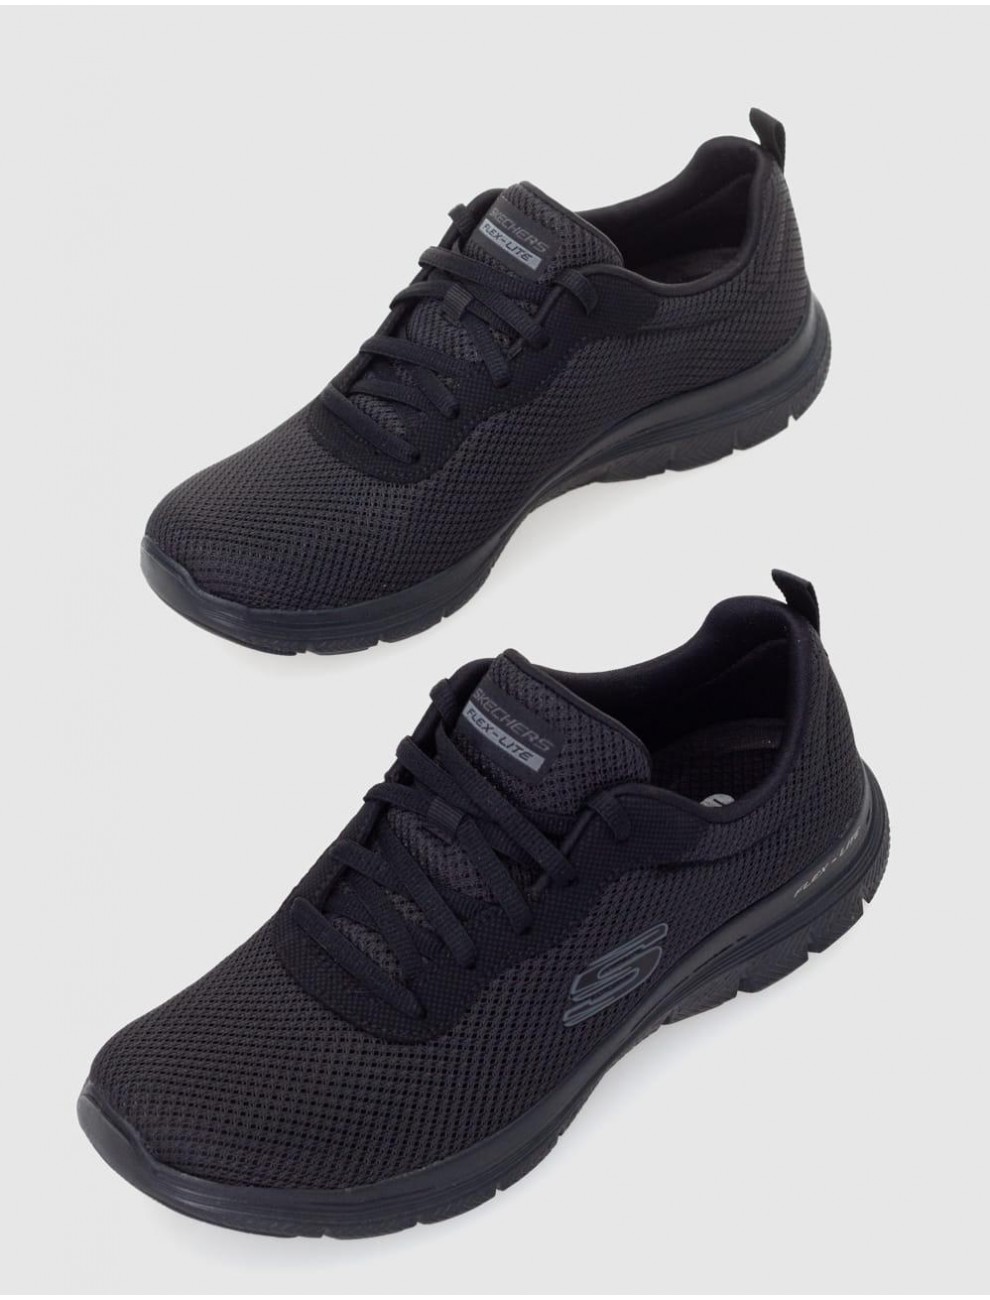 Zapatillas Skechers Flex Appeal 4.0 color negro para muj